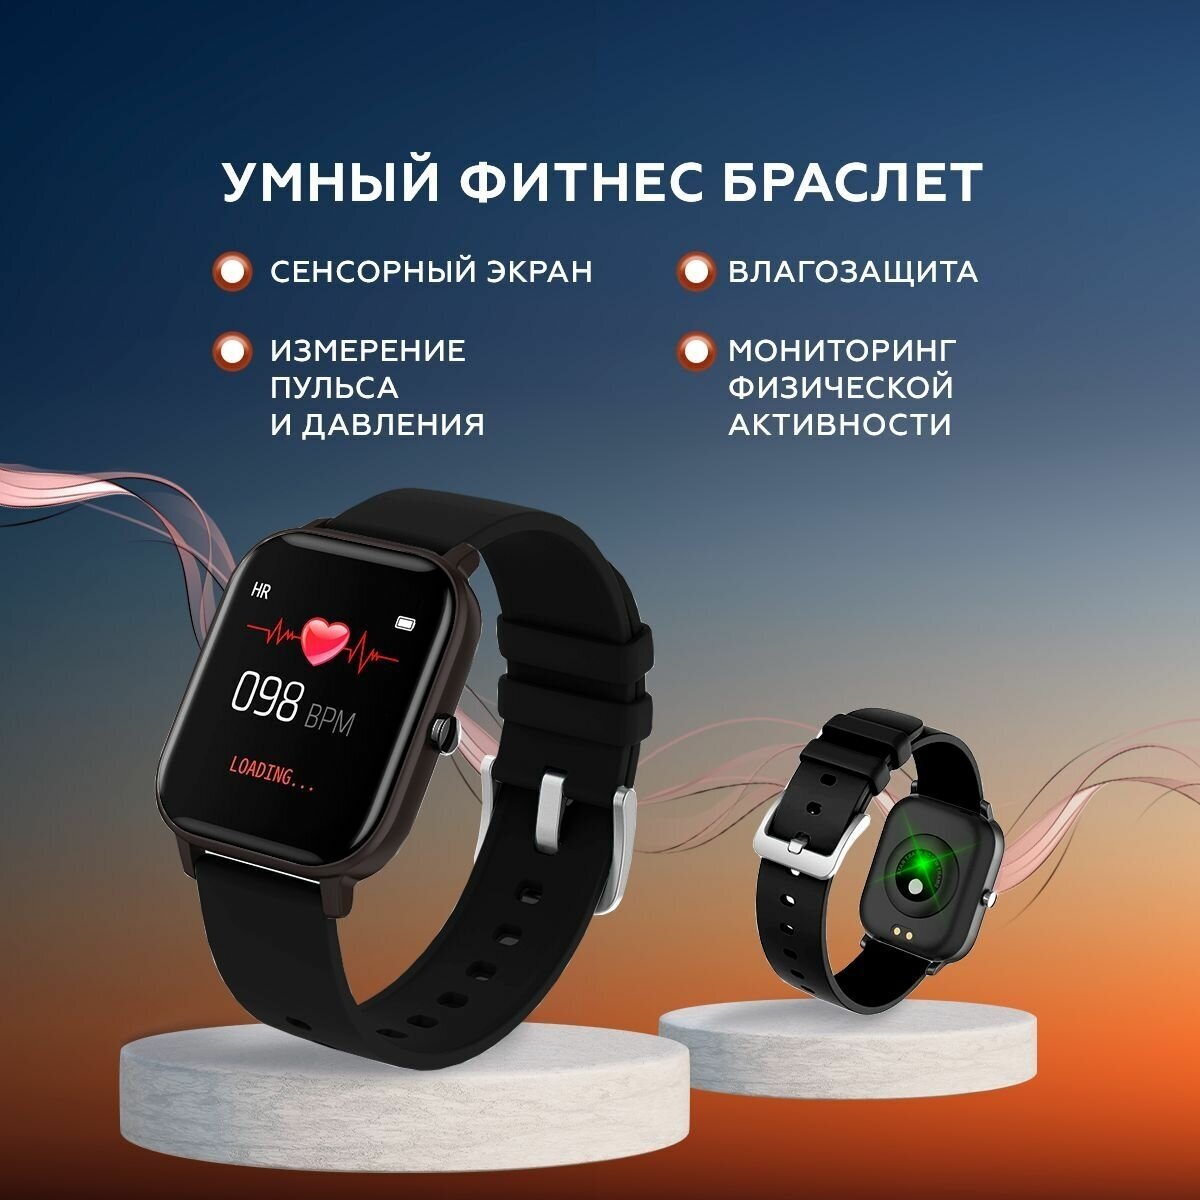 Смарт часы Smart Watch черные / Bluetooth / Смарт часы мужские женские детские / Фитнес часы наручные спортивные / Фитнес браслет /Черные